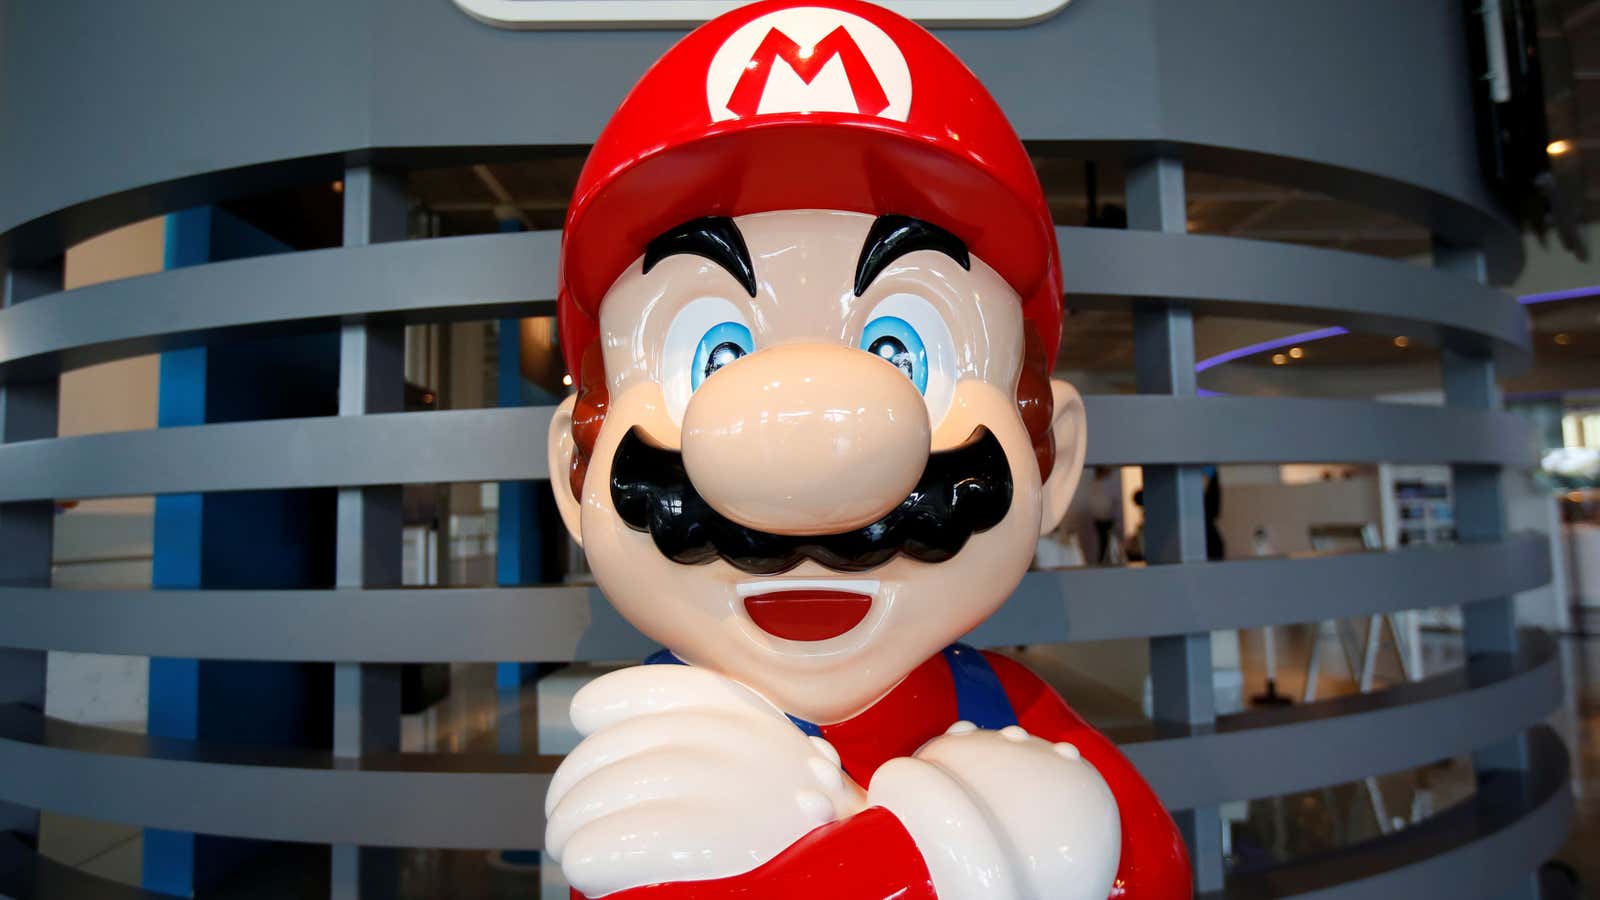 The surprising reason Nintendo made Super Mario a plumber 35 years ago